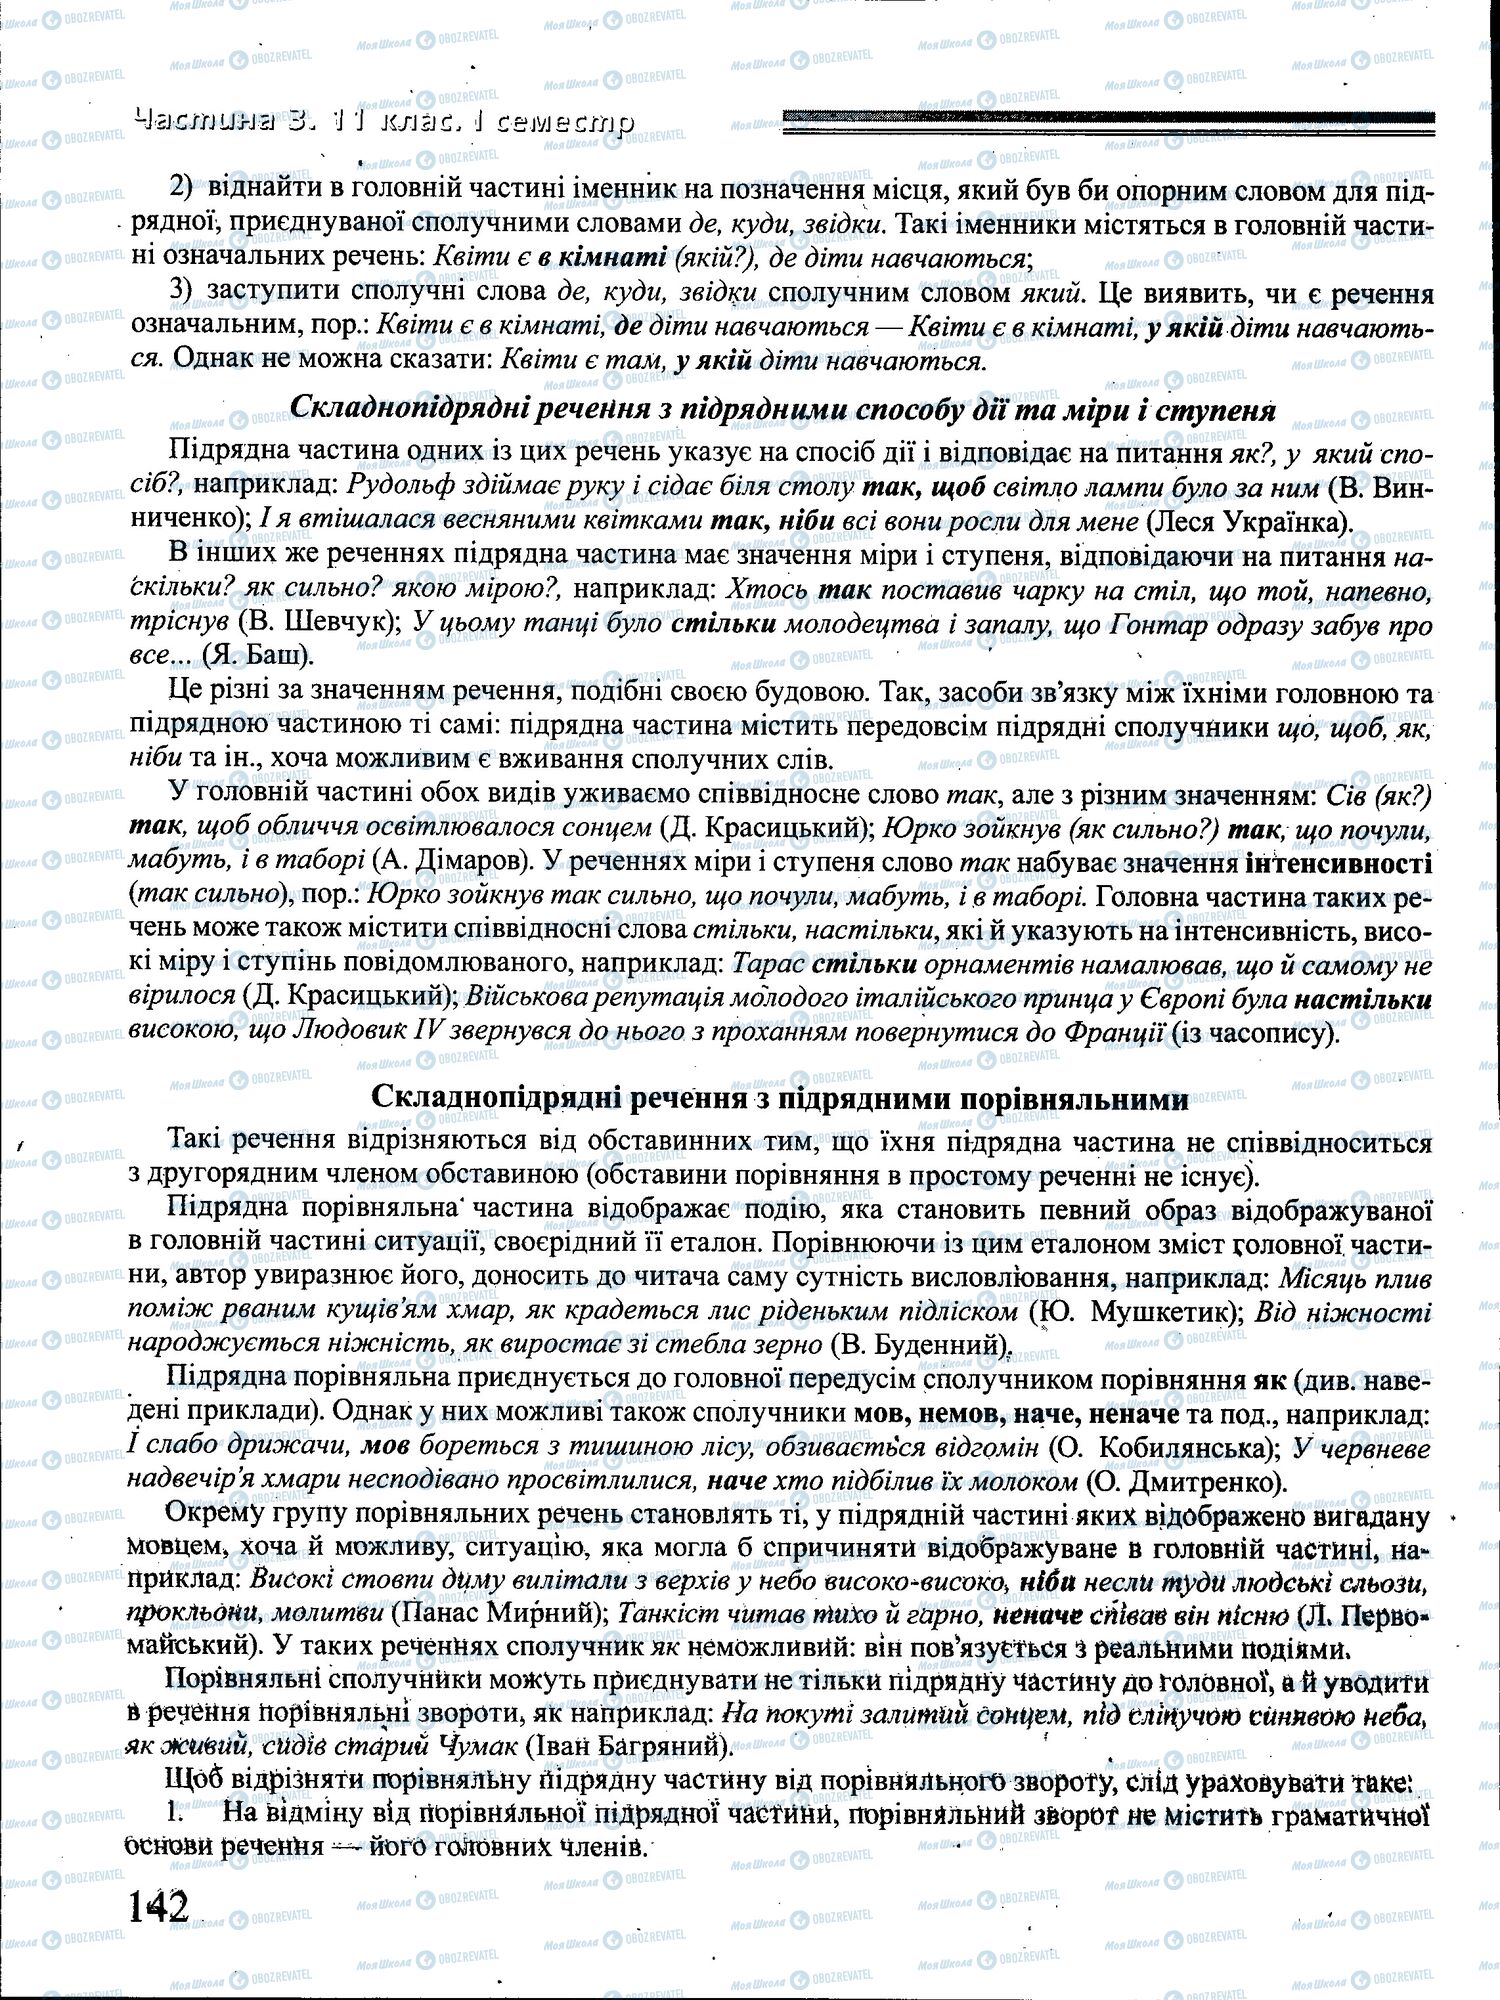 ДПА Укр мова 4 класс страница 142